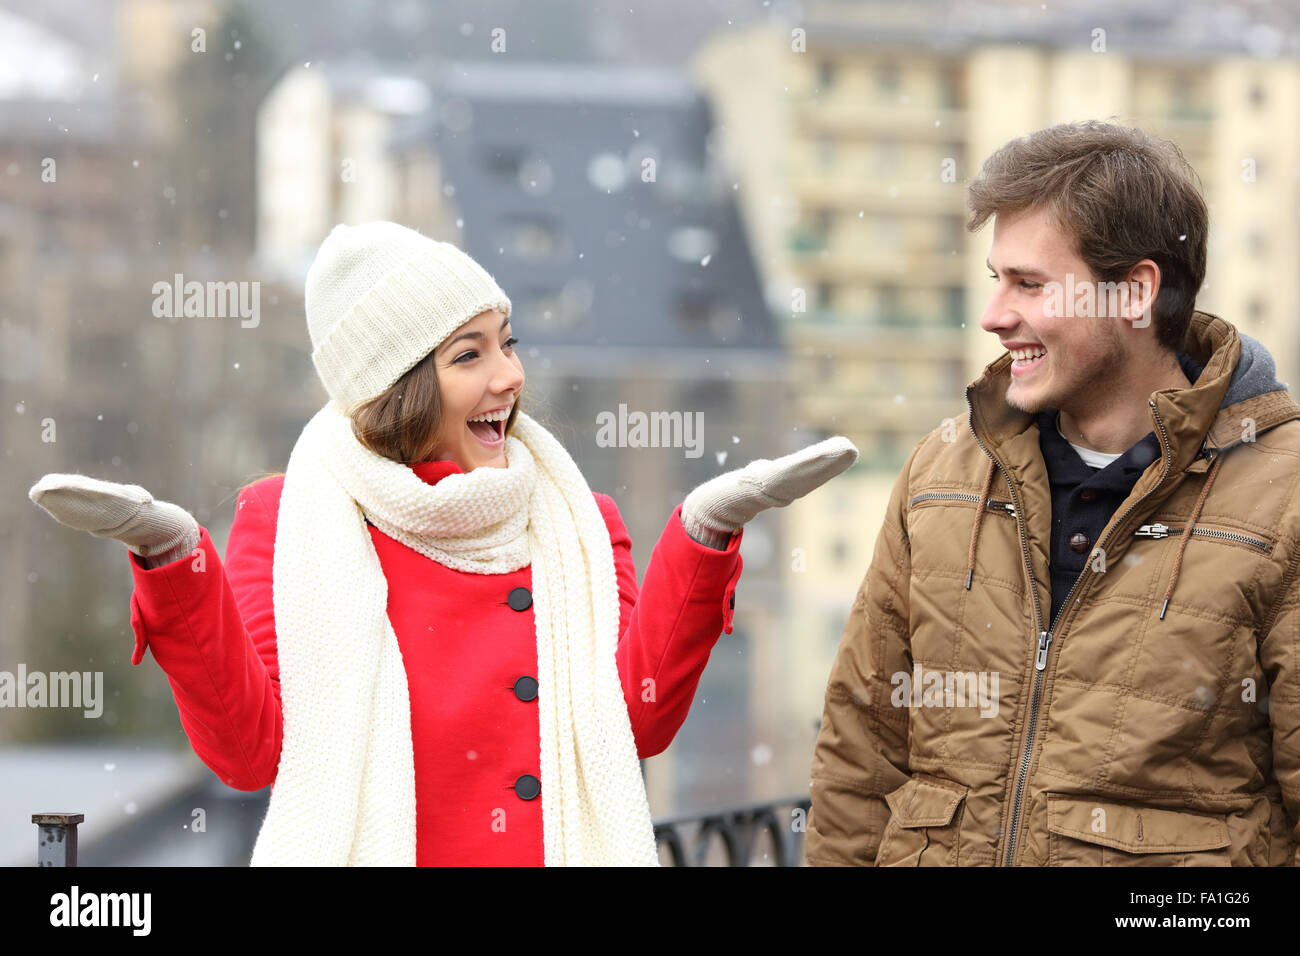 Coppia felice godendo di neve in un giorno di neve nelle strade di una città Foto Stock